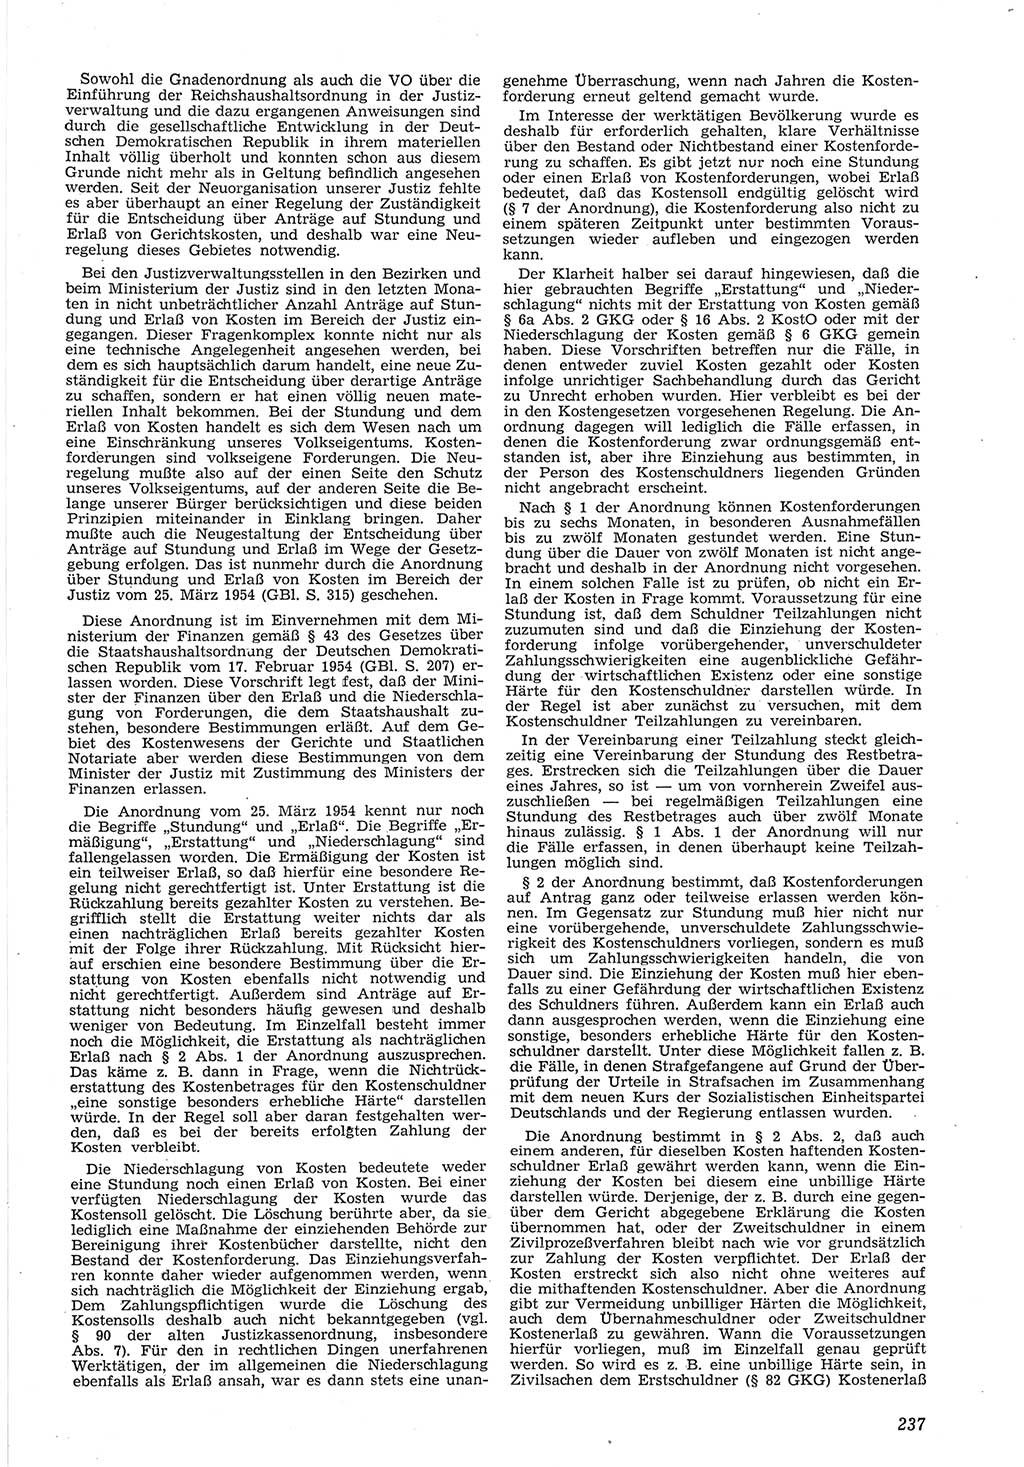 Neue Justiz (NJ), Zeitschrift für Recht und Rechtswissenschaft [Deutsche Demokratische Republik (DDR)], 8. Jahrgang 1954, Seite 237 (NJ DDR 1954, S. 237)